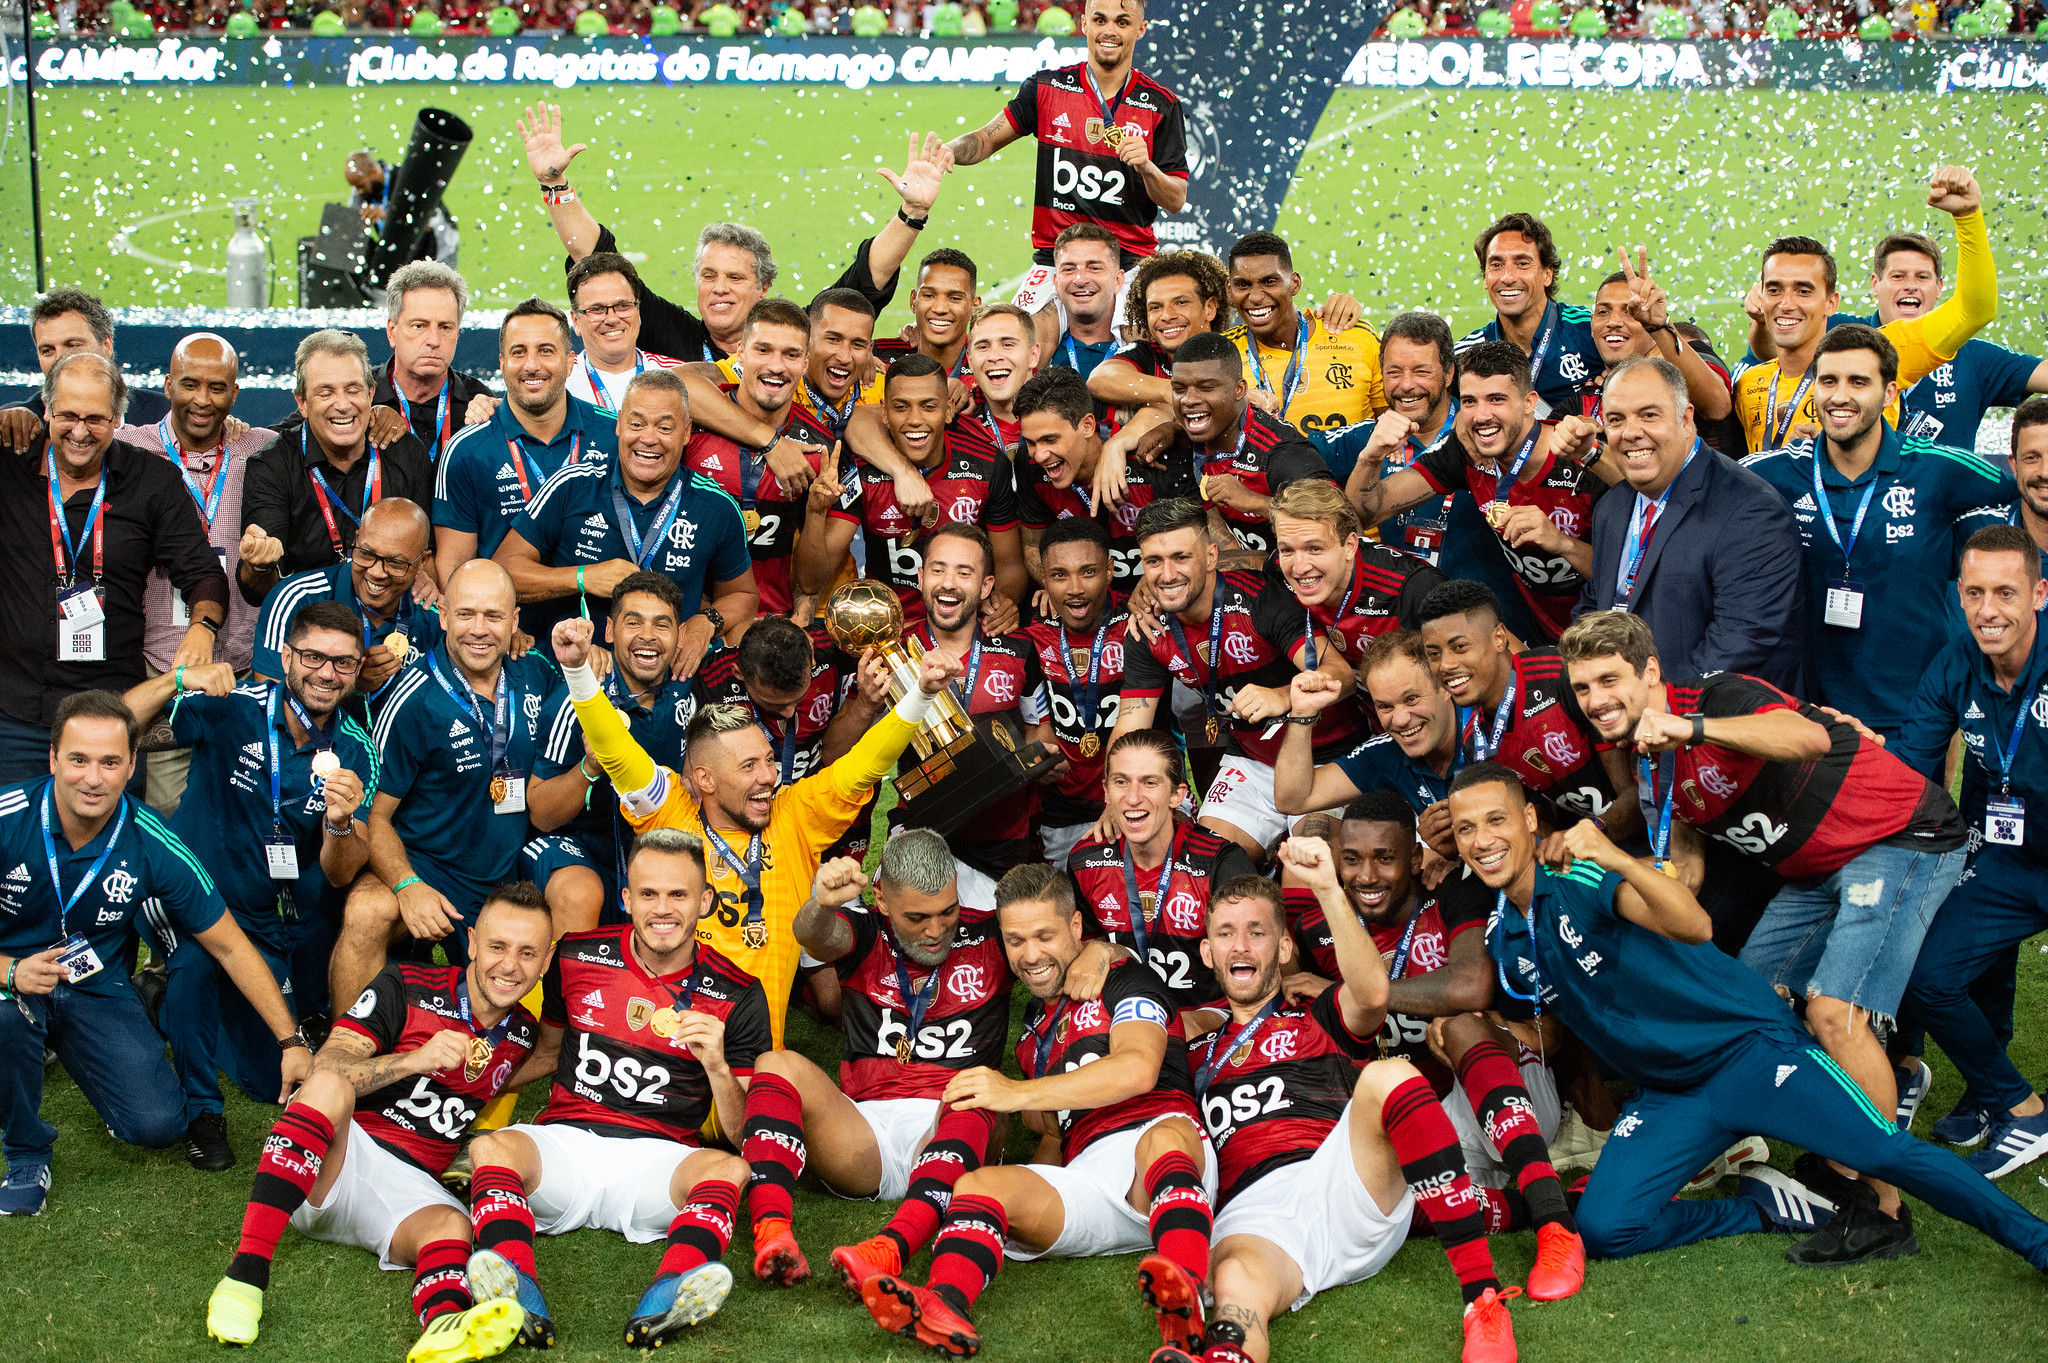 Com a conquista inédita do Flamengo na Recopa Sul-americana, o rubro-negro garantiu o sexto título internacional de sua história. Confira nesta galeria quais clubes brasileiros têm mais títulos internacionais.